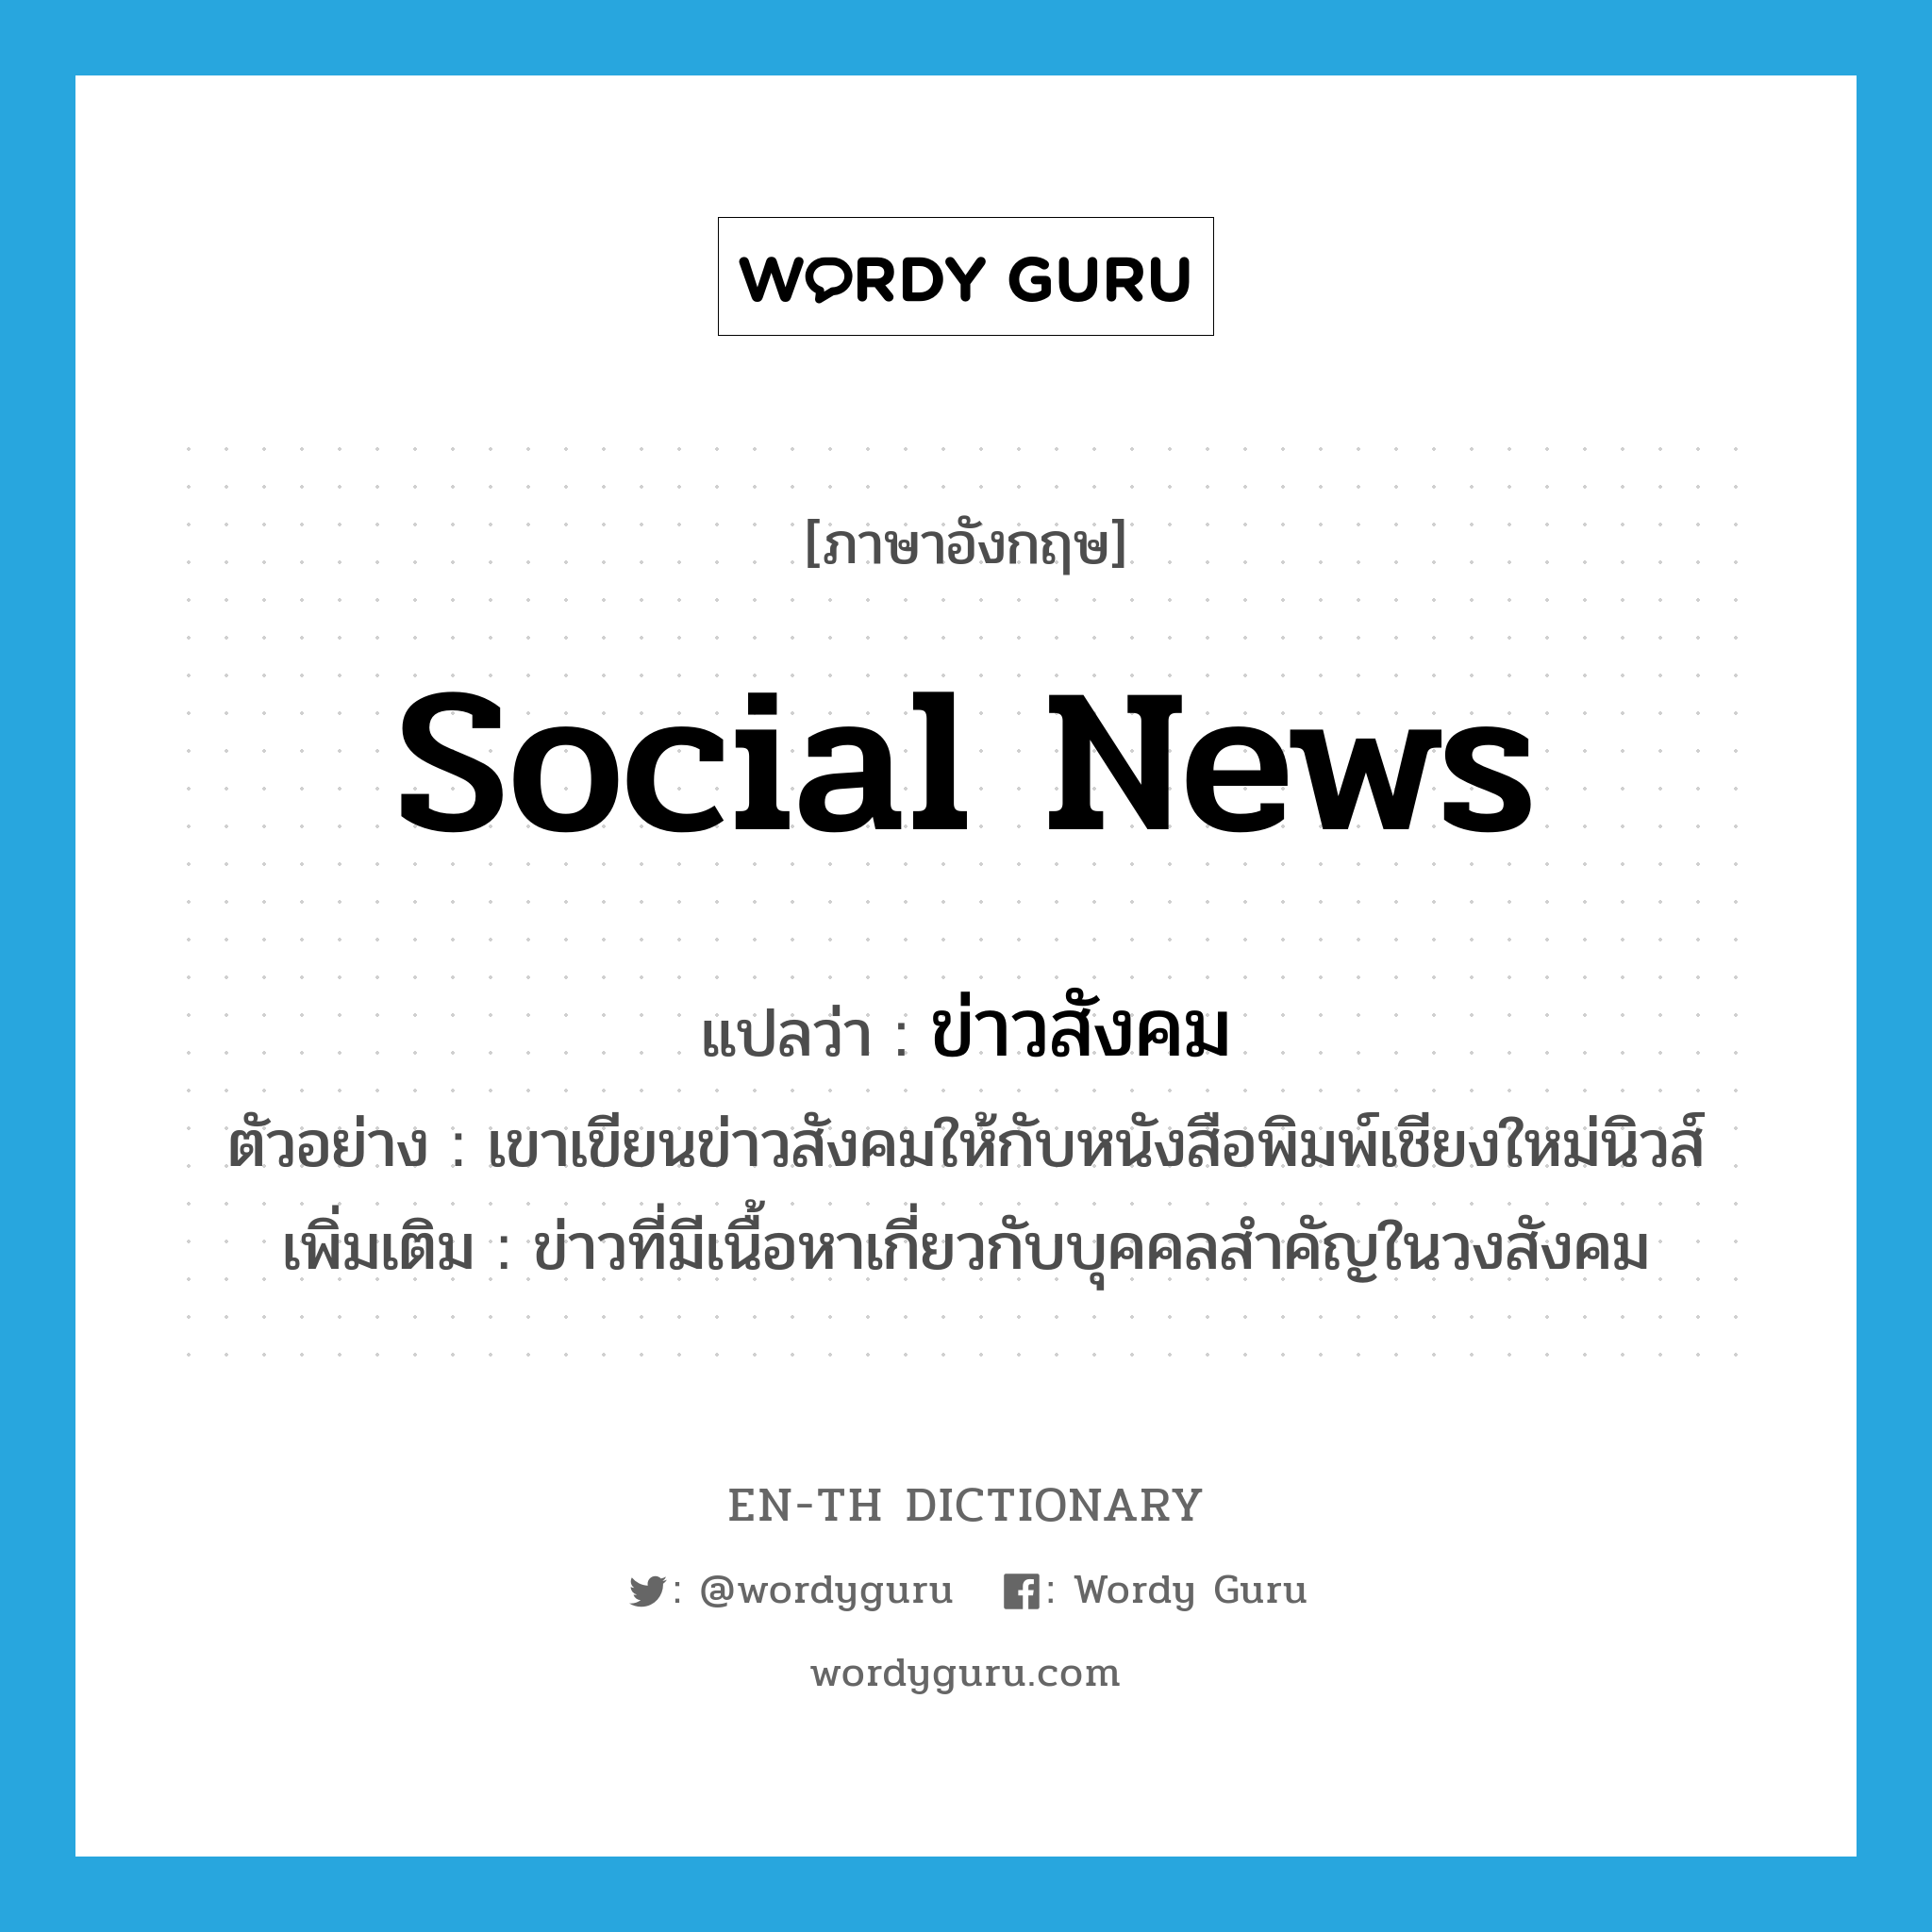 social news แปลว่า?, คำศัพท์ภาษาอังกฤษ social news แปลว่า ข่าวสังคม ประเภท N ตัวอย่าง เขาเขียนข่าวสังคมให้กับหนังสือพิมพ์เชียงใหม่นิวส์ เพิ่มเติม ข่าวที่มีเนื้อหาเกี่ยวกับบุคคลสำคัญในวงสังคม หมวด N